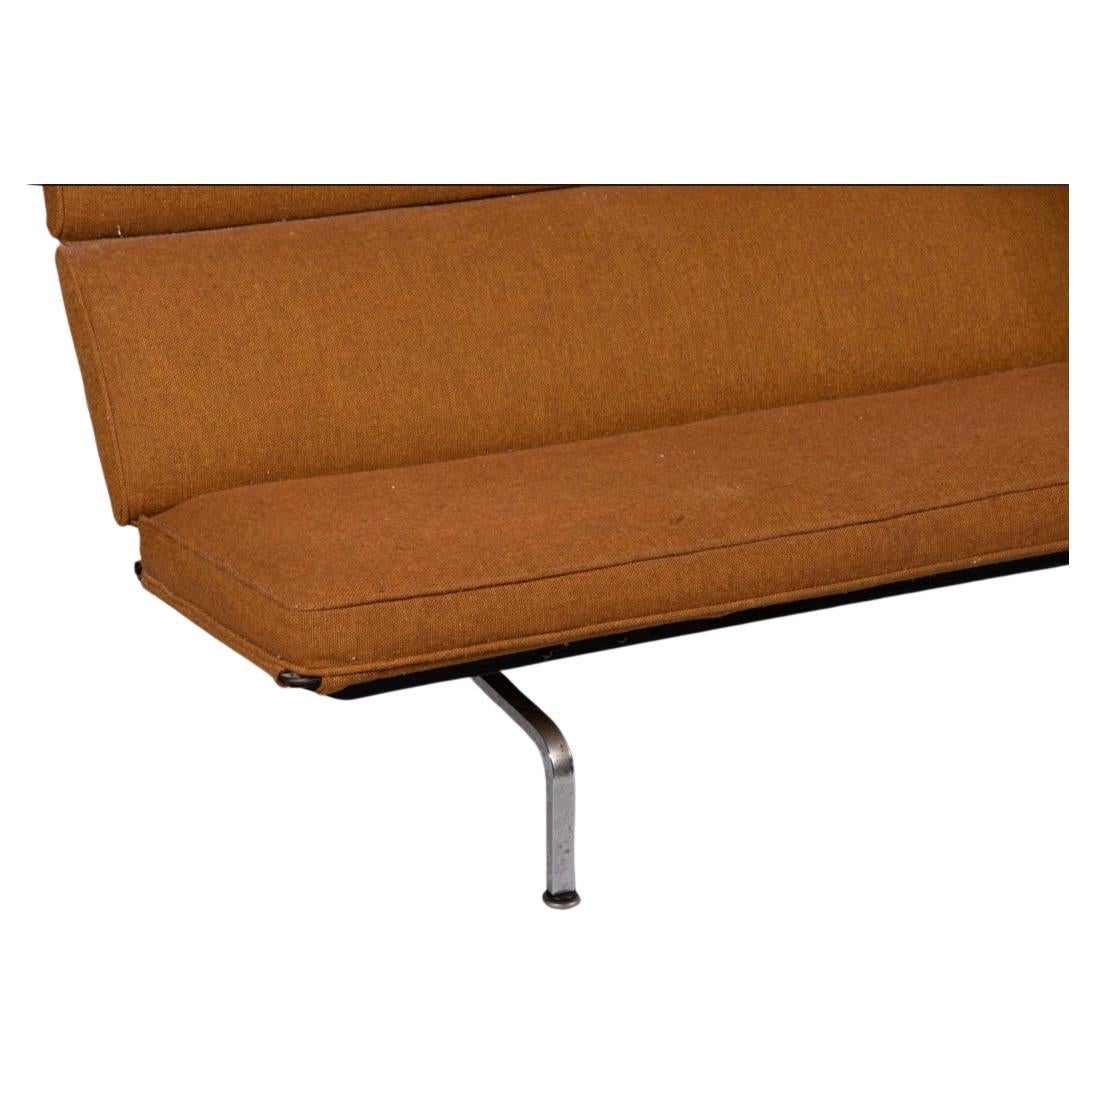 Original Eames Sofa Compact mit orangefarbenem Herman Miller-Gewebebezug. Die kompakte Couch von Charles und Ray Eames ist ein großartiges Design, das ein subtiles Profil behält. Die gepolsterten Pads, die die Rückenlehne bilden, sind mit einer